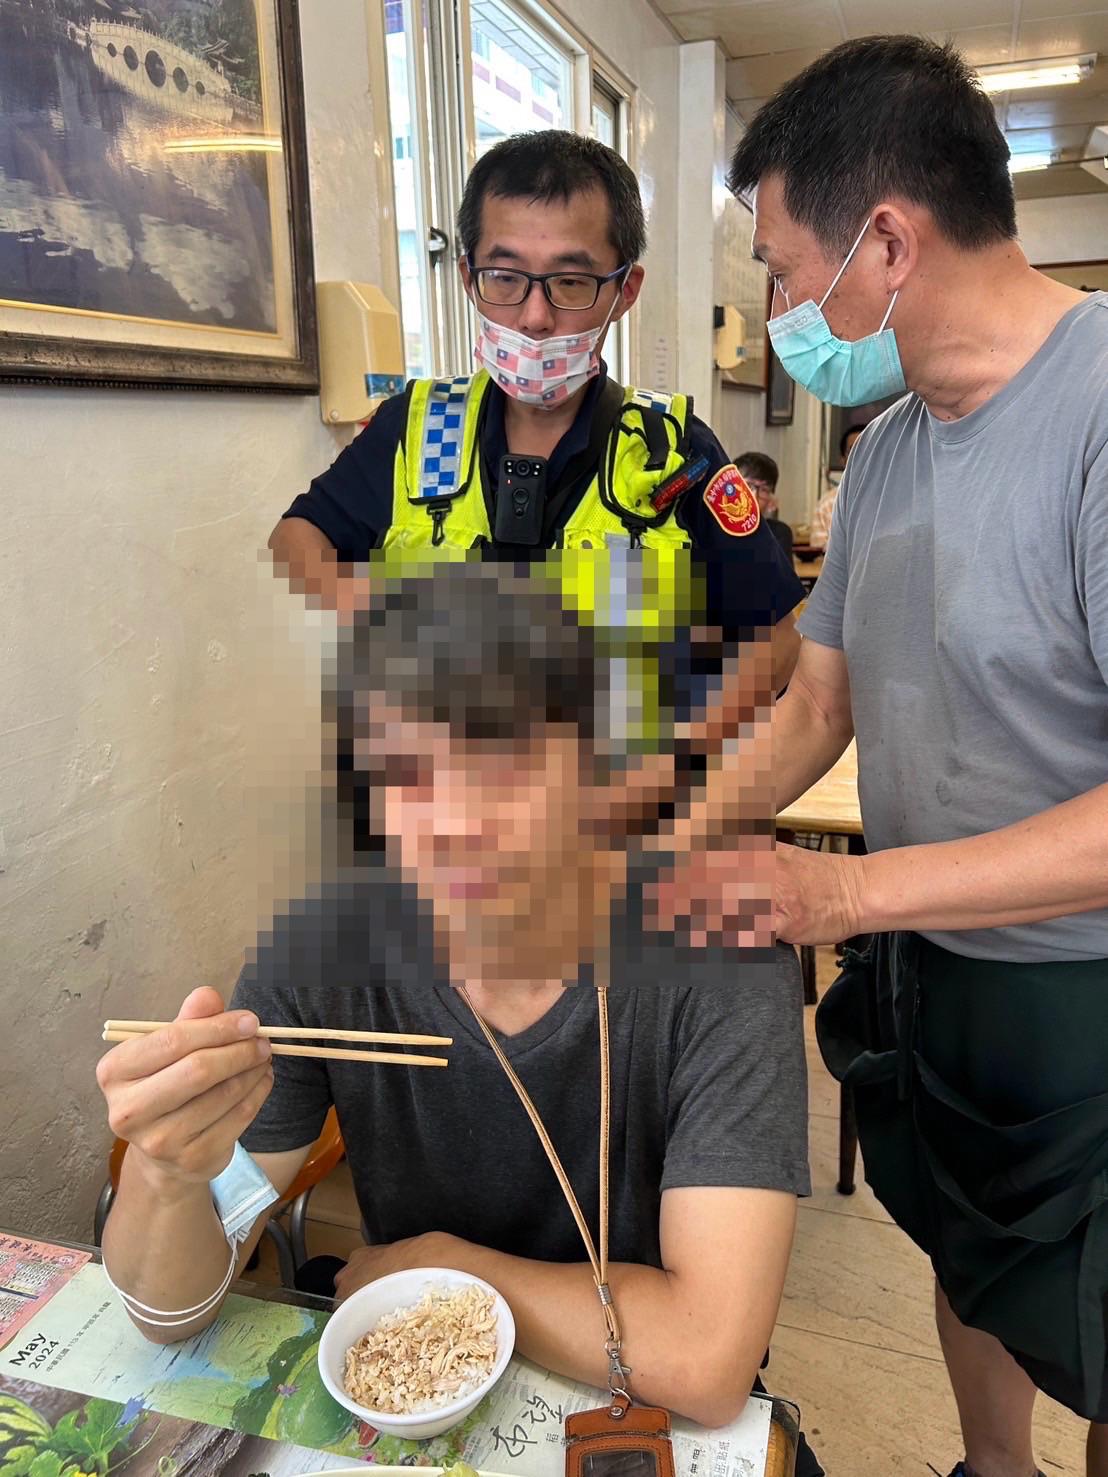 台中市江姓男子在3日于南屯区一家火鸡肉饭店用餐时，突拿著筷子全身僵硬不动，救护人员发现是低血糖，将他送医。图／第四警分局提供